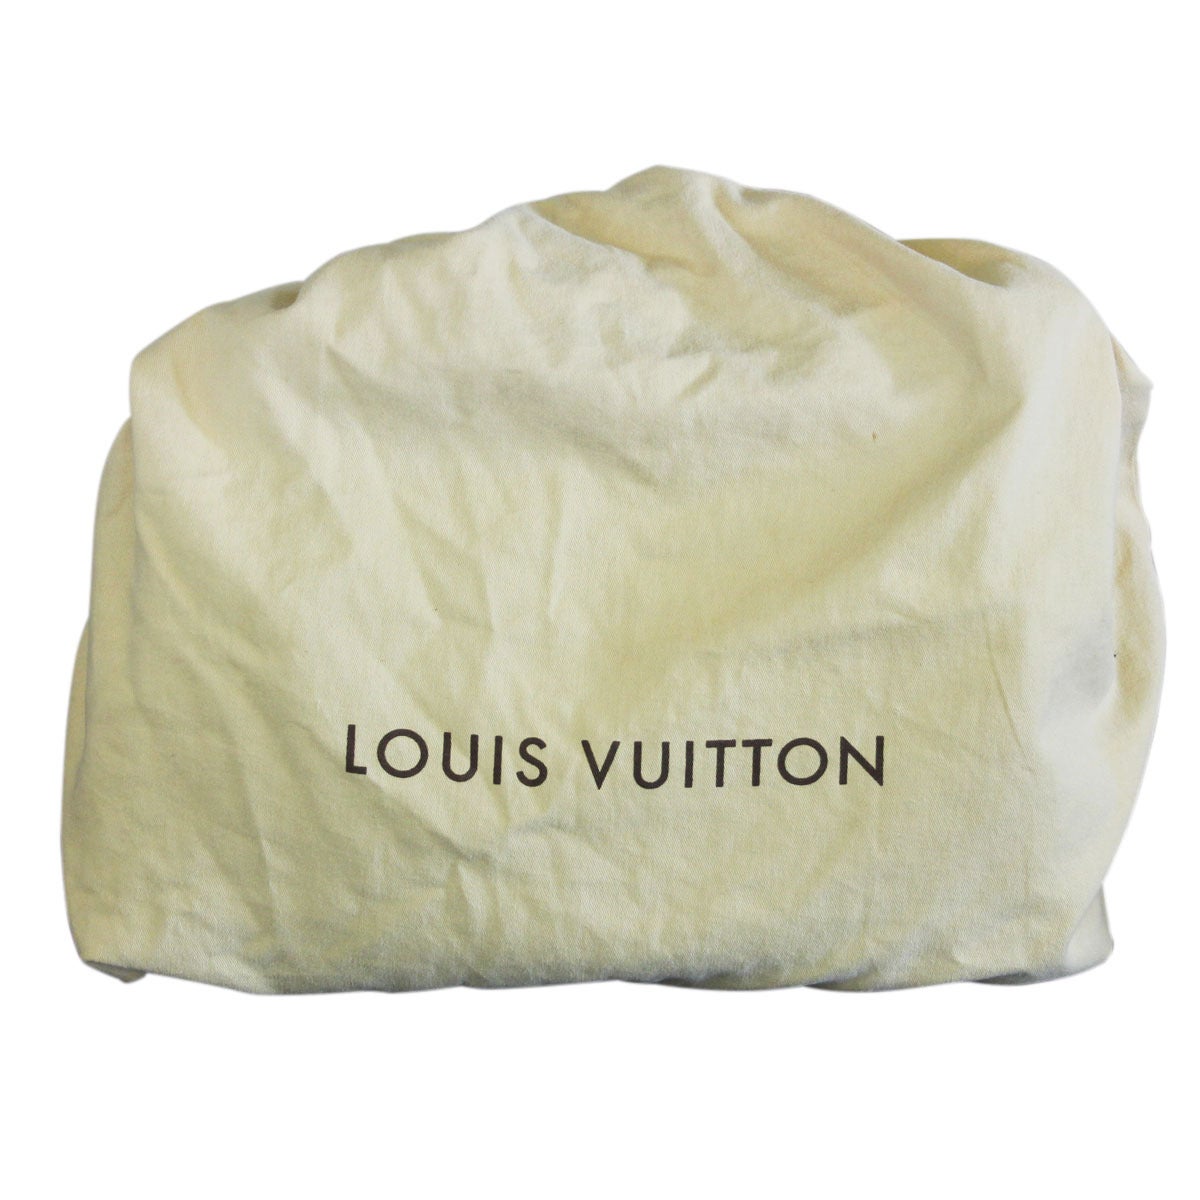 Louis Vuitton - Bean Bag Couch